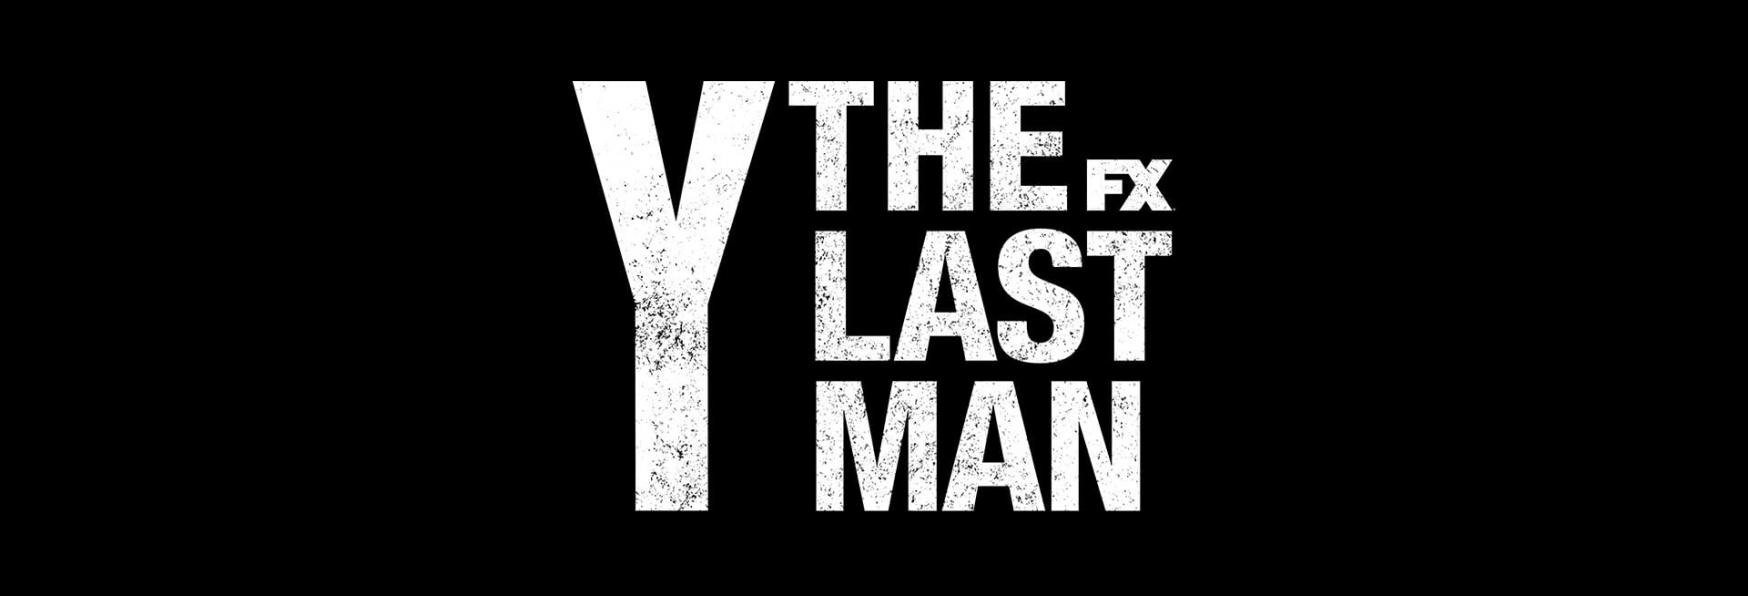 Y: The Last Man - i Motivi dietro la Cancellazione. Verrà Salvata da un'altra Emittente?